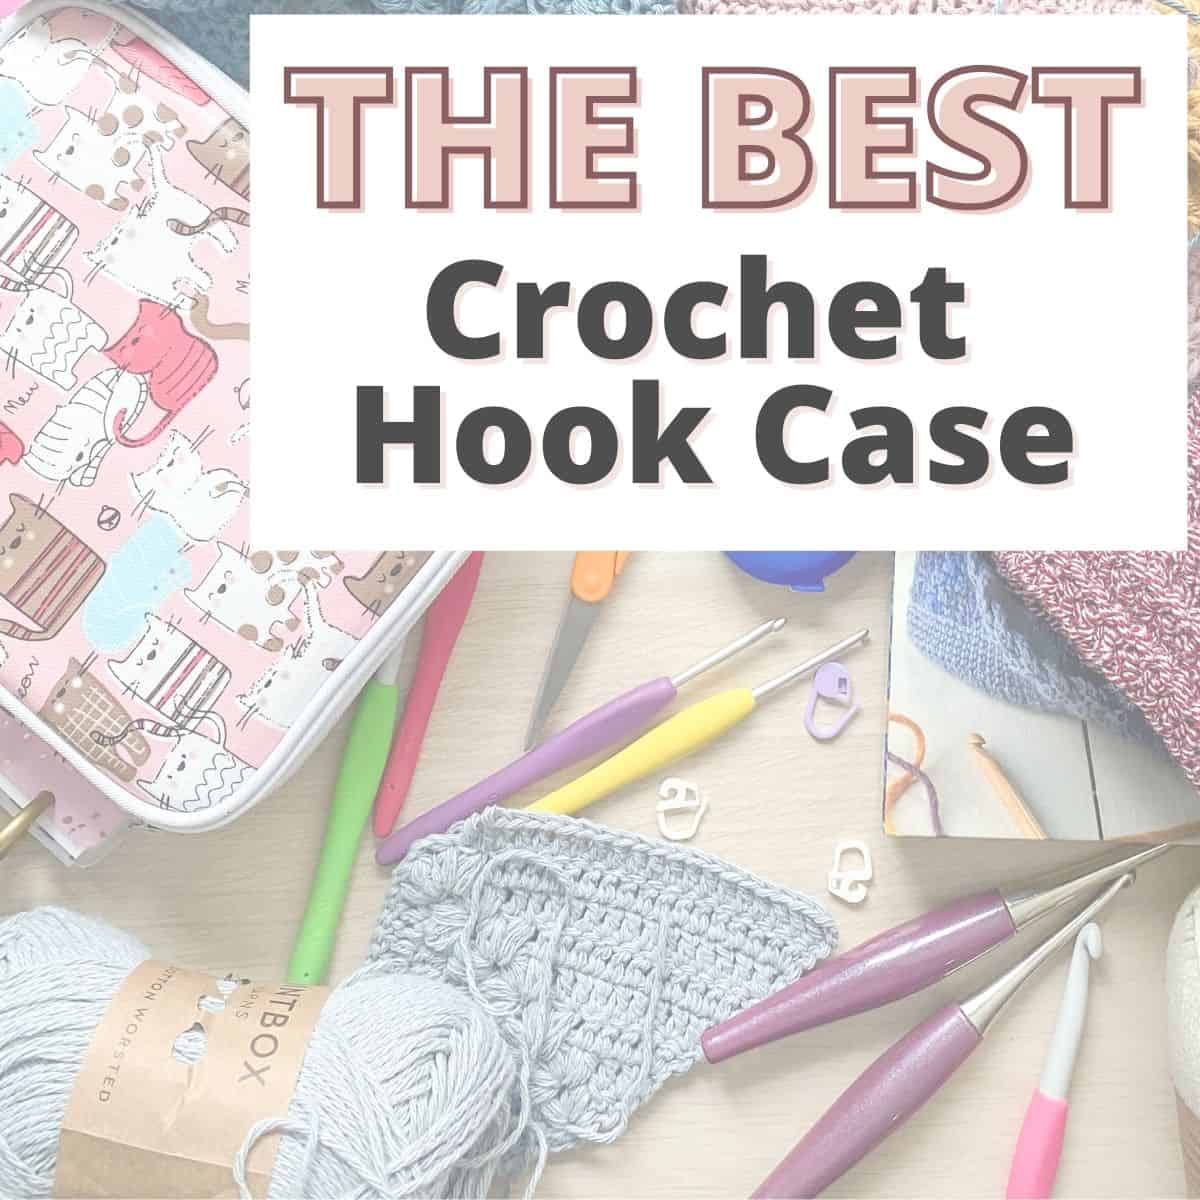 Crochet Hook Materials: The Perfect Hook, Crochet